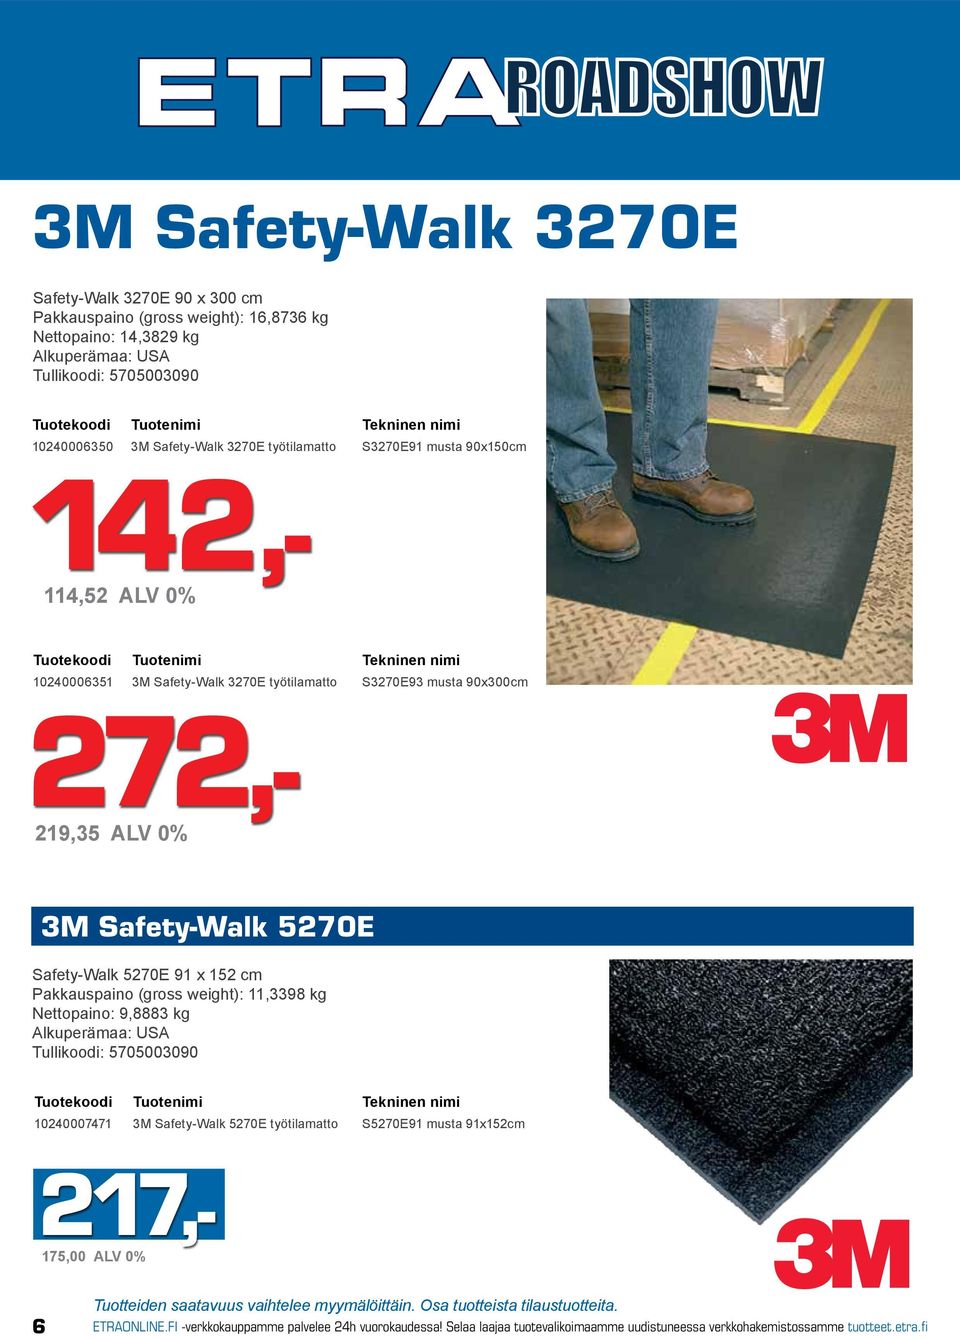 5270E Safety-Walk 5270E 91 x 152 cm Pakkauspaino (gross weight): 11,3398 kg Nettopaino: 9,8883 kg Alkuperämaa: USA Tullikoodi: 5705003090 10240007471 3M Safety-Walk 5270E